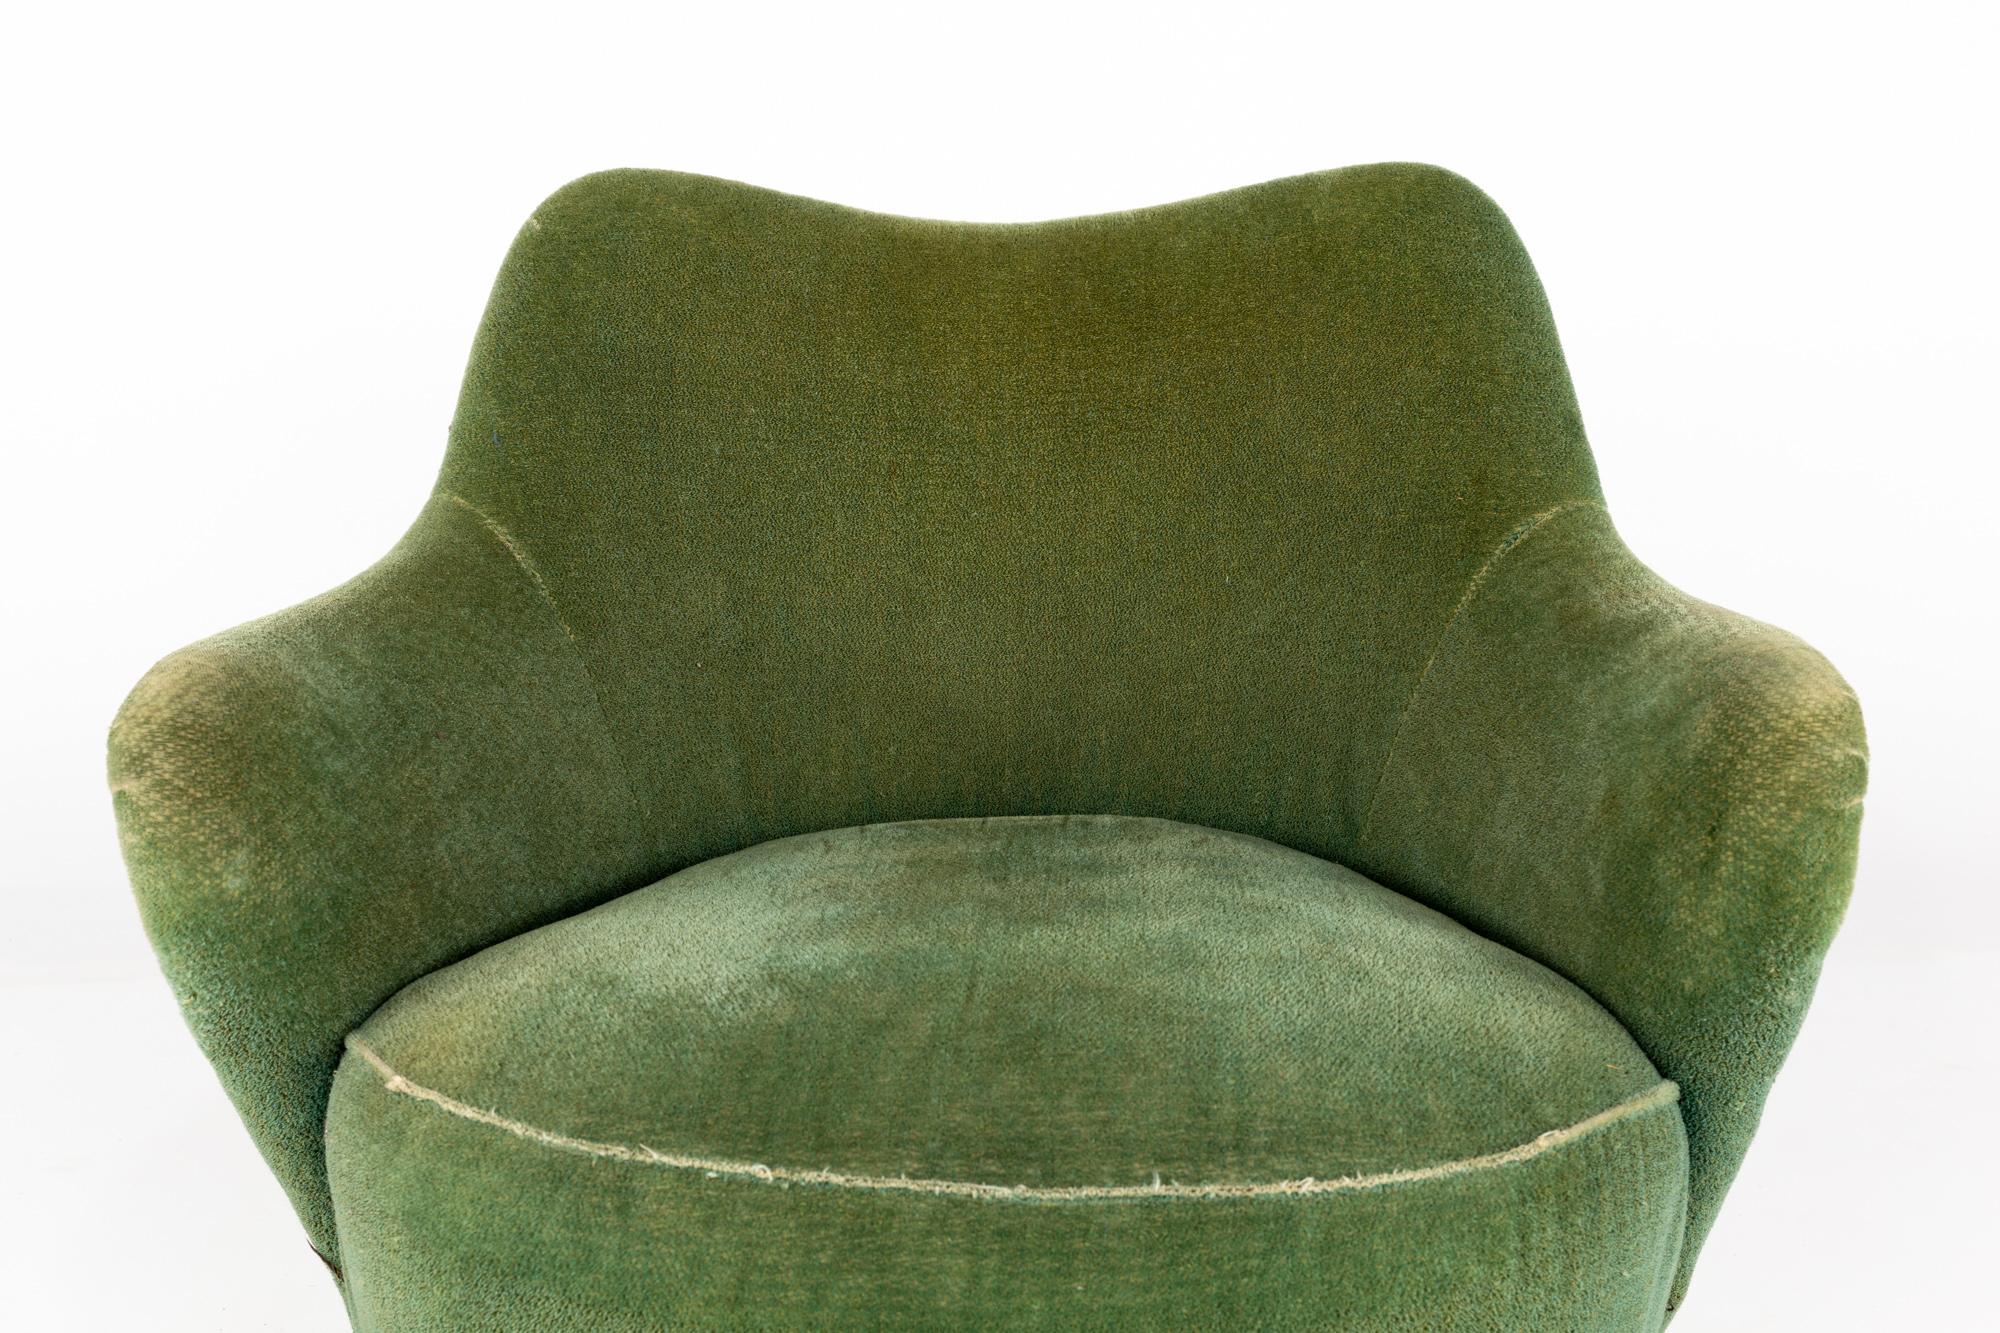 Upholstery Heywood Wakefield Mid Century Green Velvet Upholstered Tub Lounge Chair